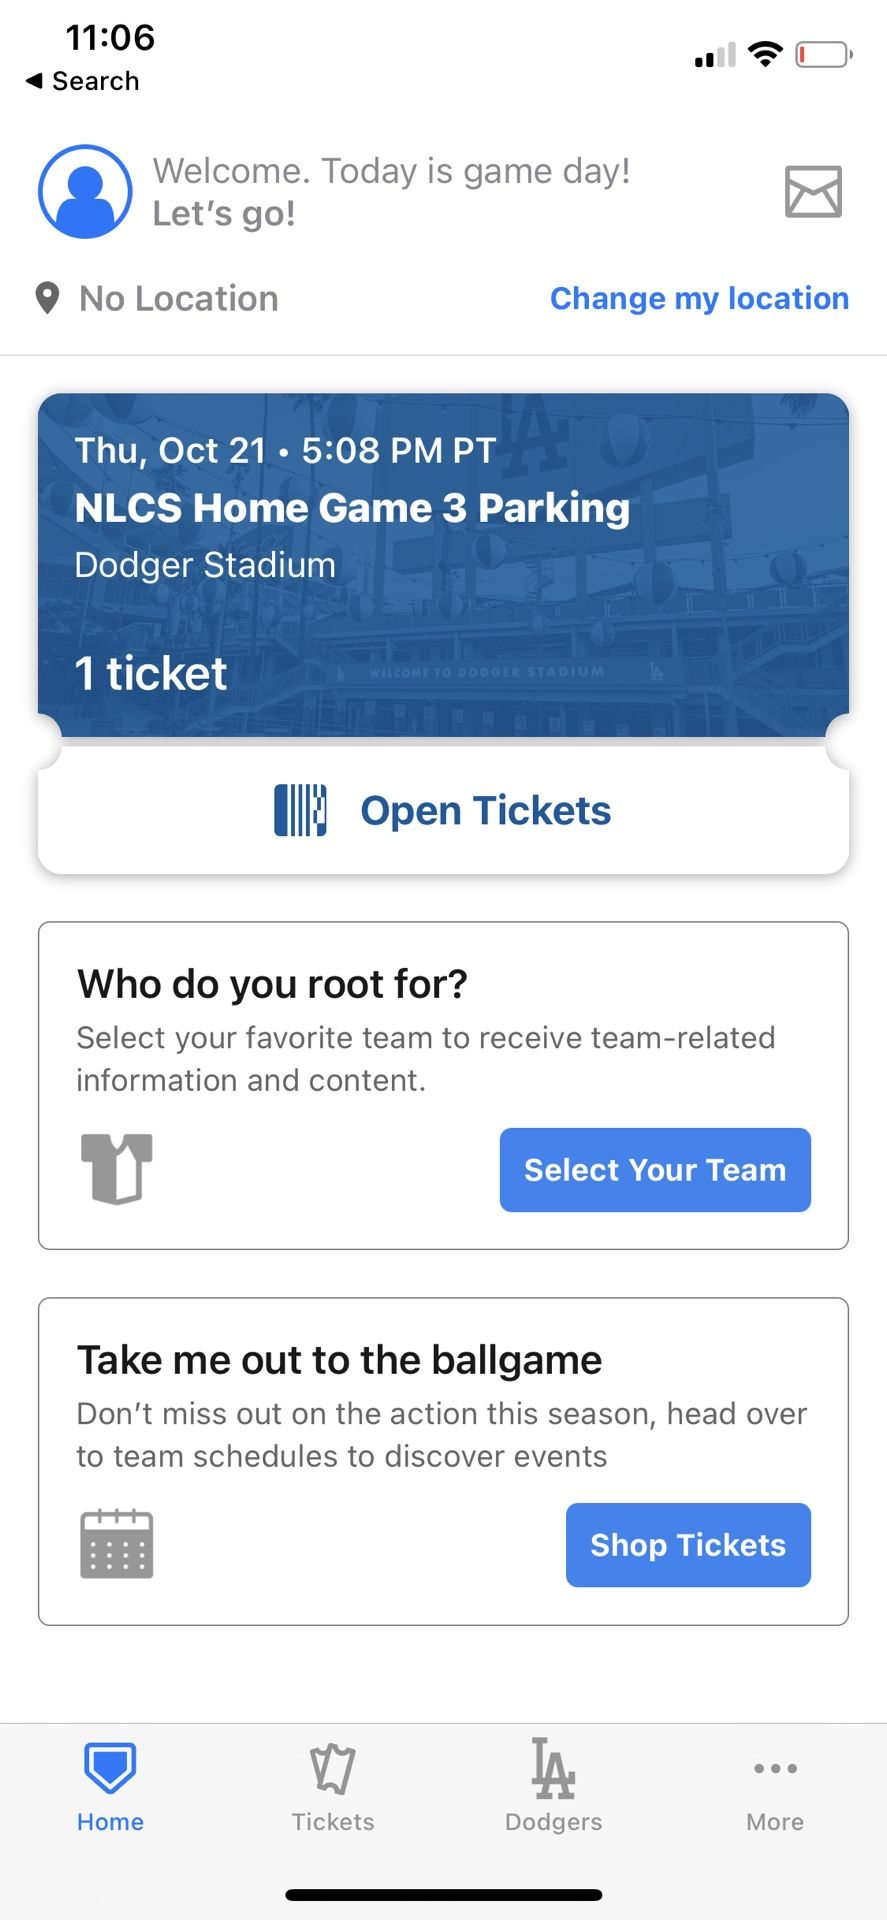 Dodgers Parking Ticket 10/21